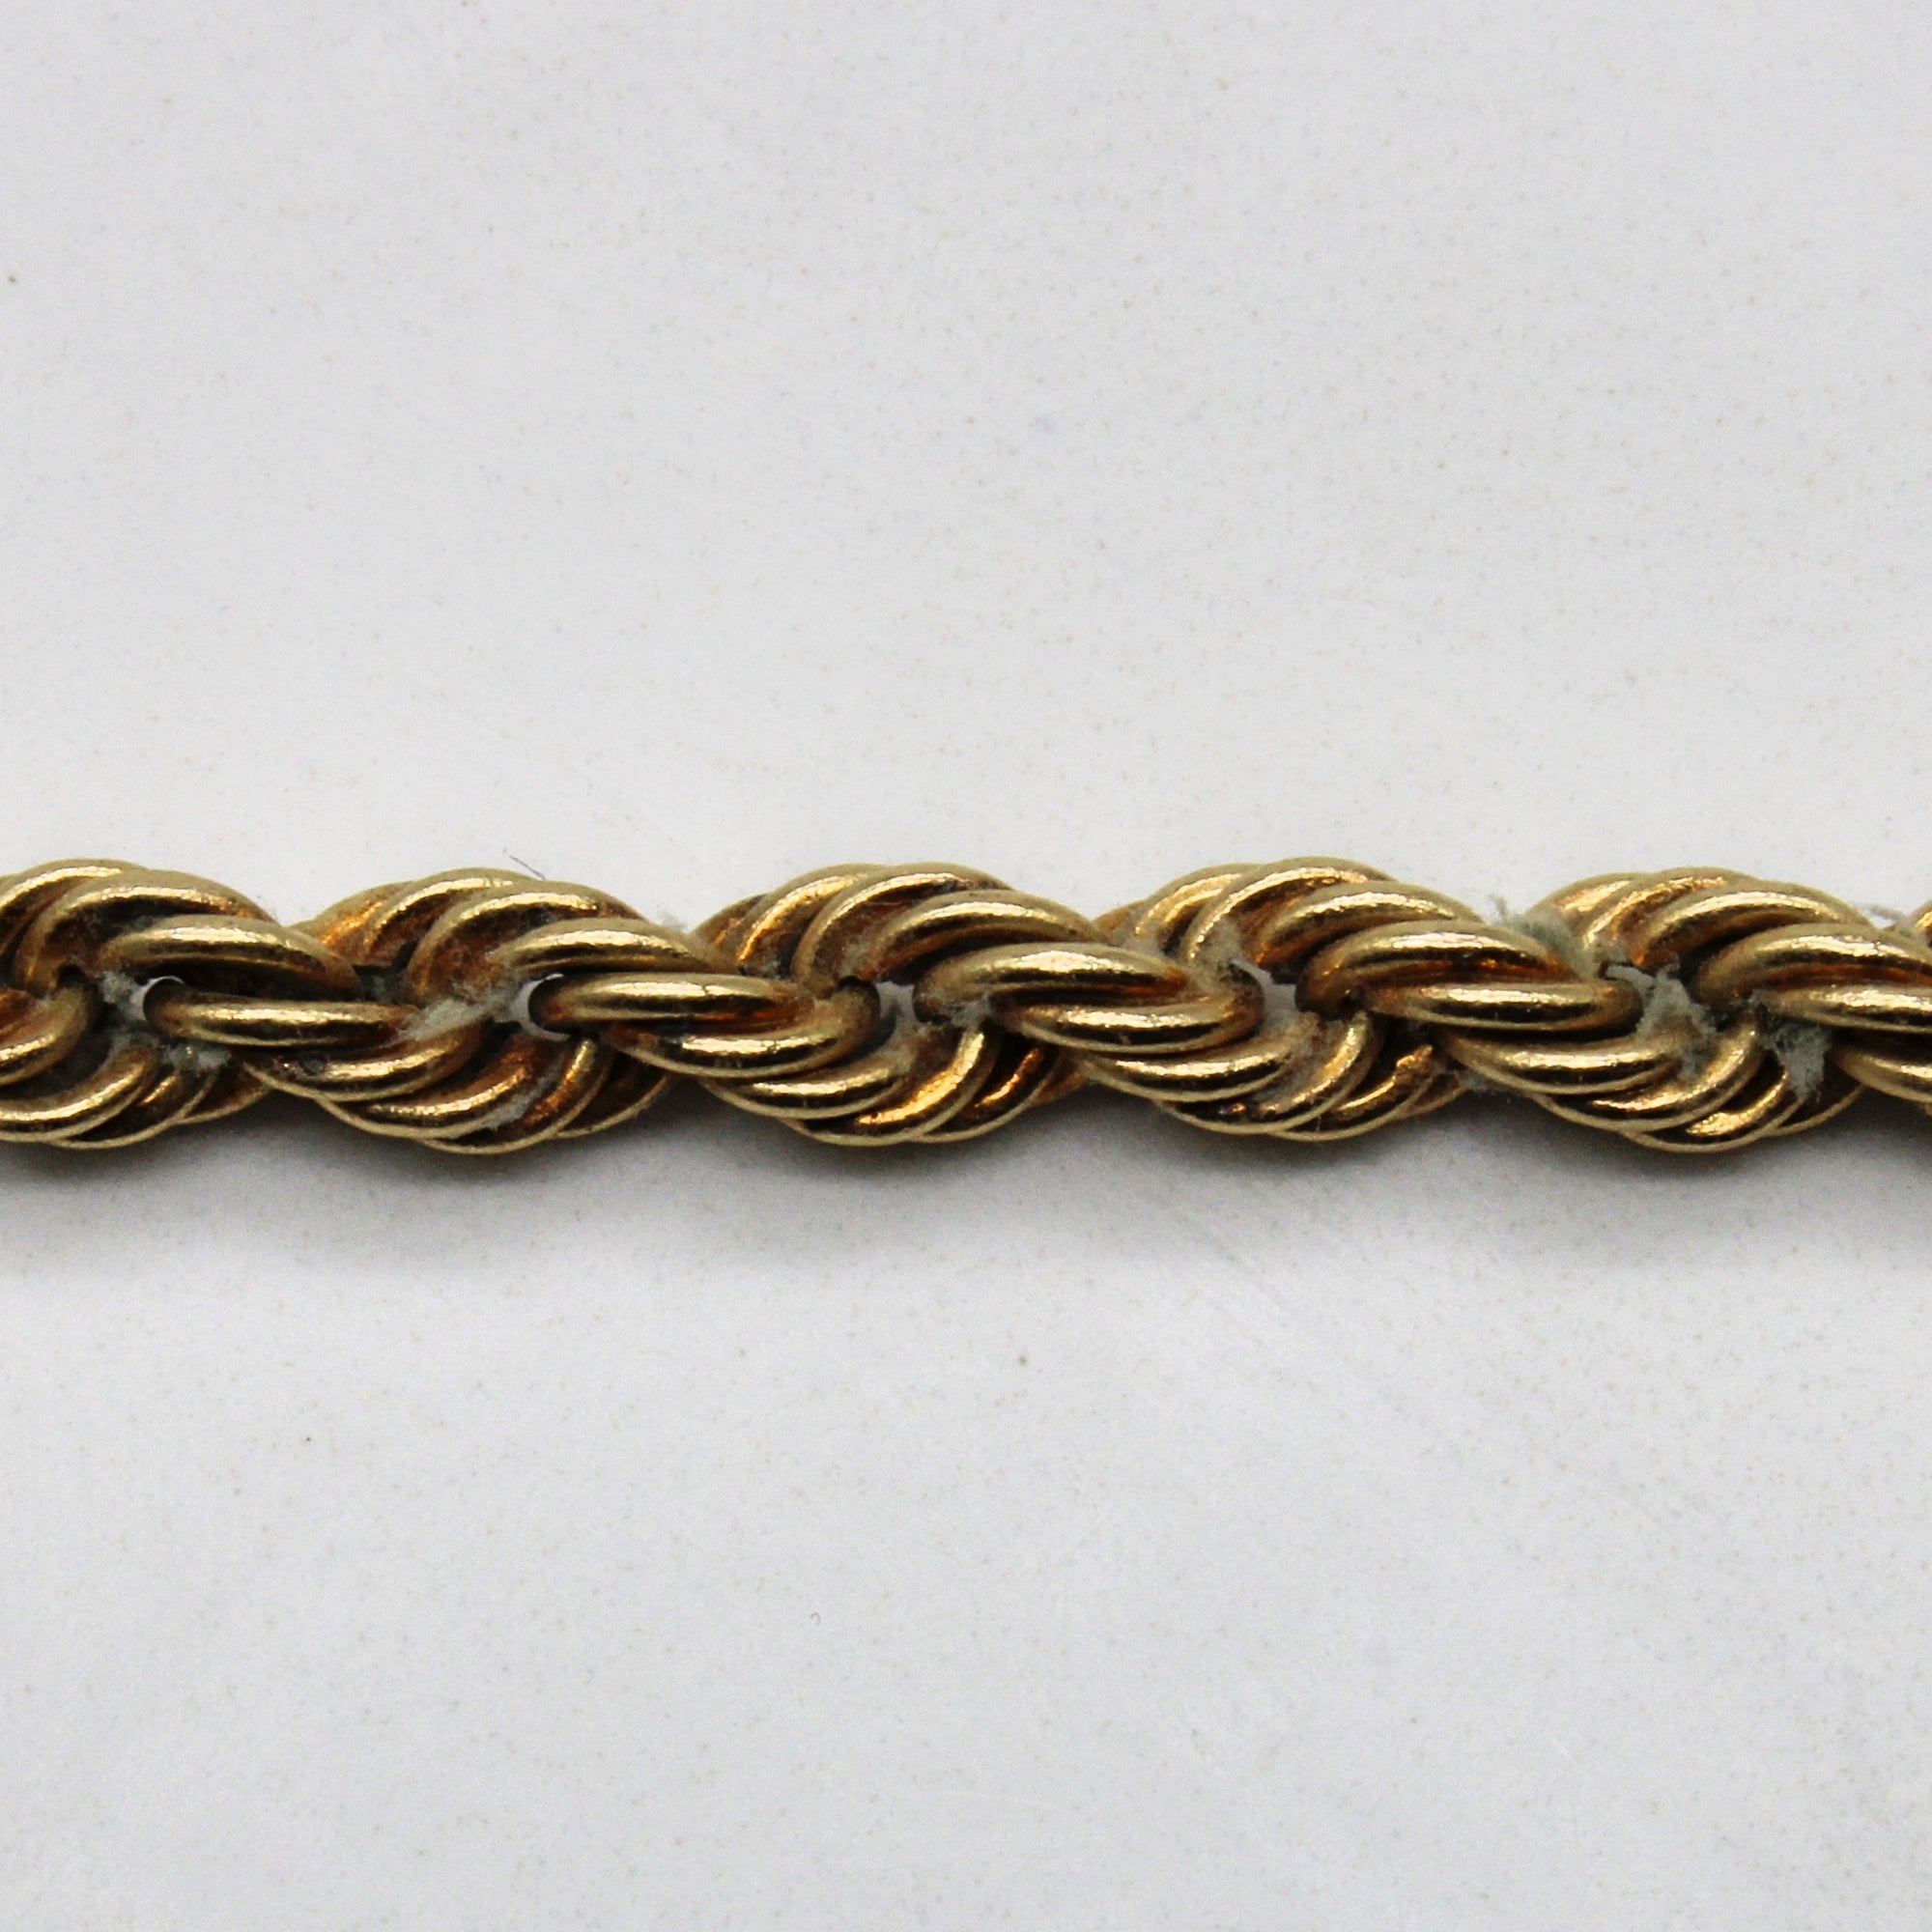 10k Yellow Gold Rope Chain | 16